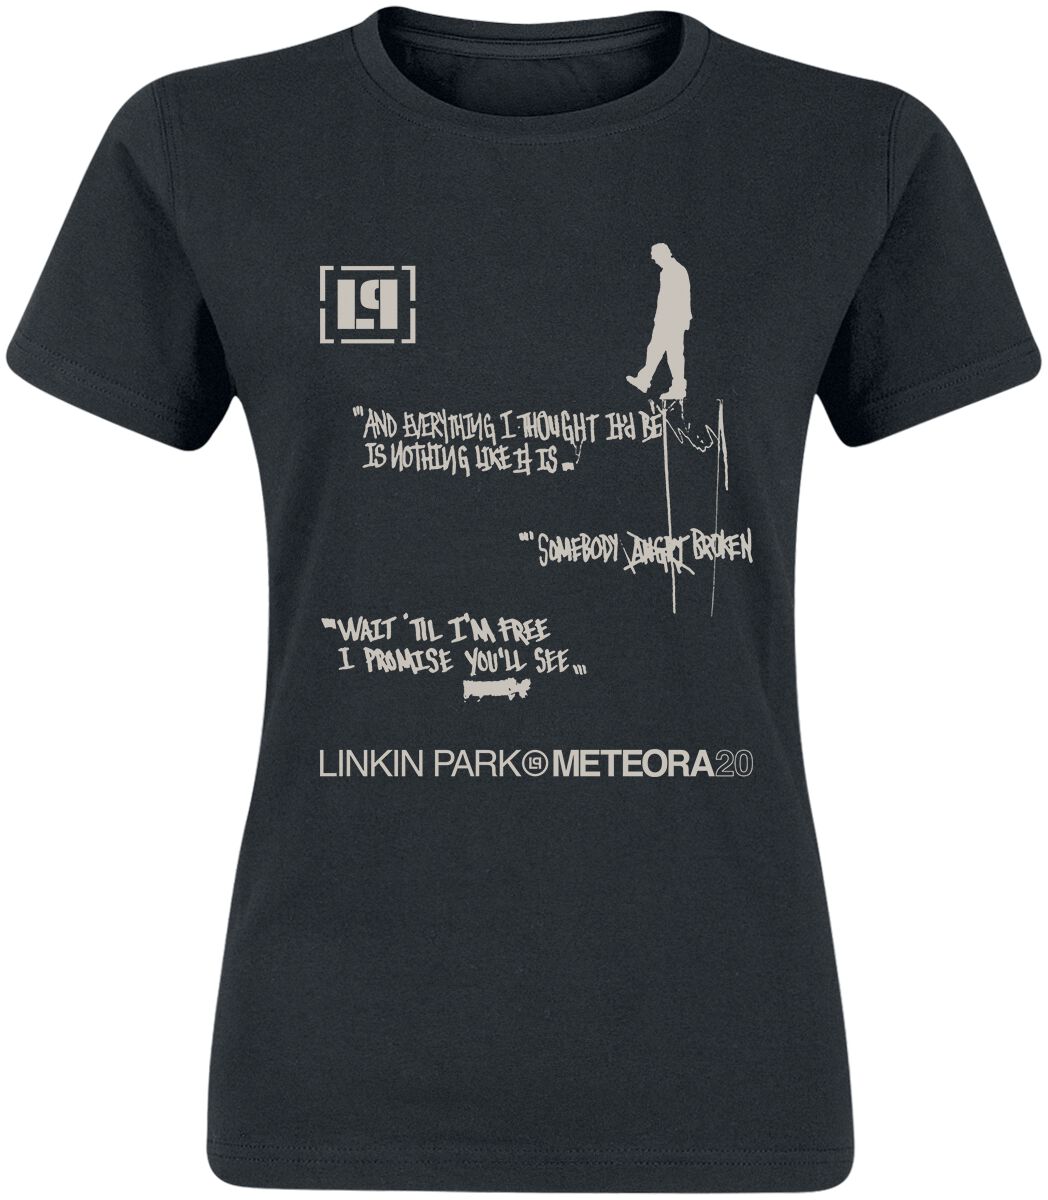 Linkin Park T-Shirt - Meteora 20th Anniversary - M bis XXL - für Damen - Größe M - schwarz  - EMP exklusives Merchandise!